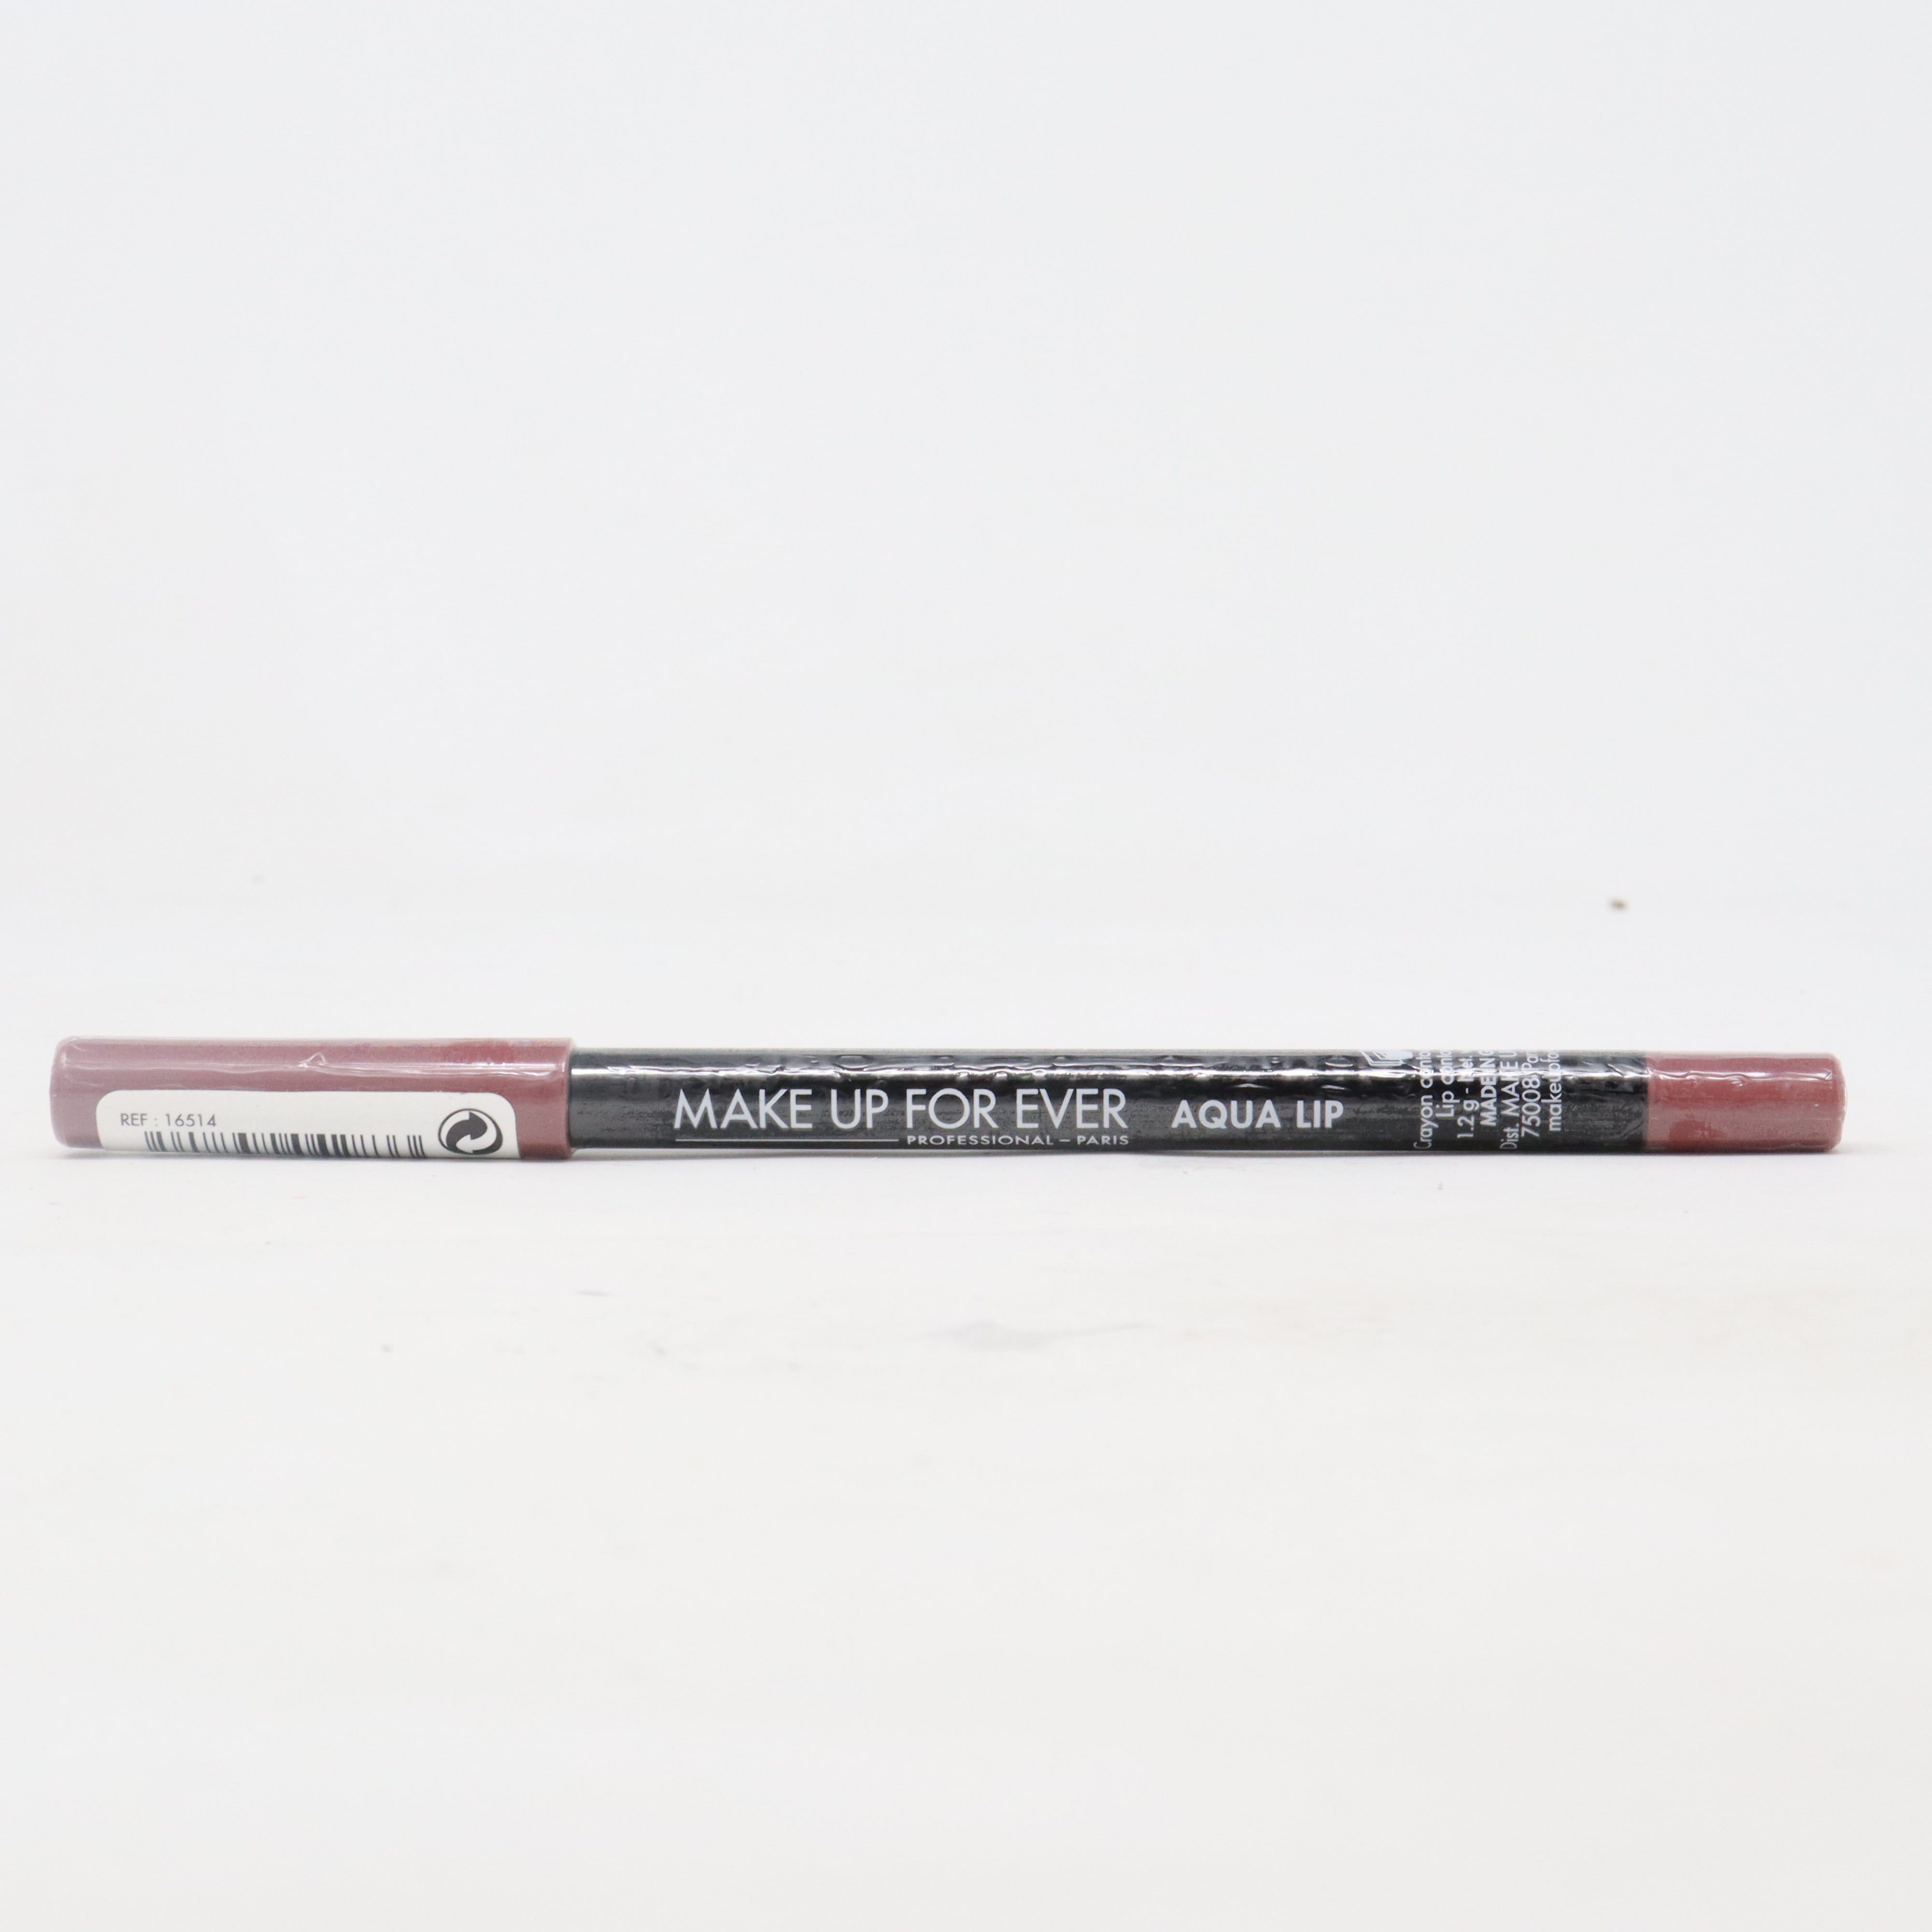 Aqua Lip - Eyeliner & Pencil – MAKE UP FOR EVER